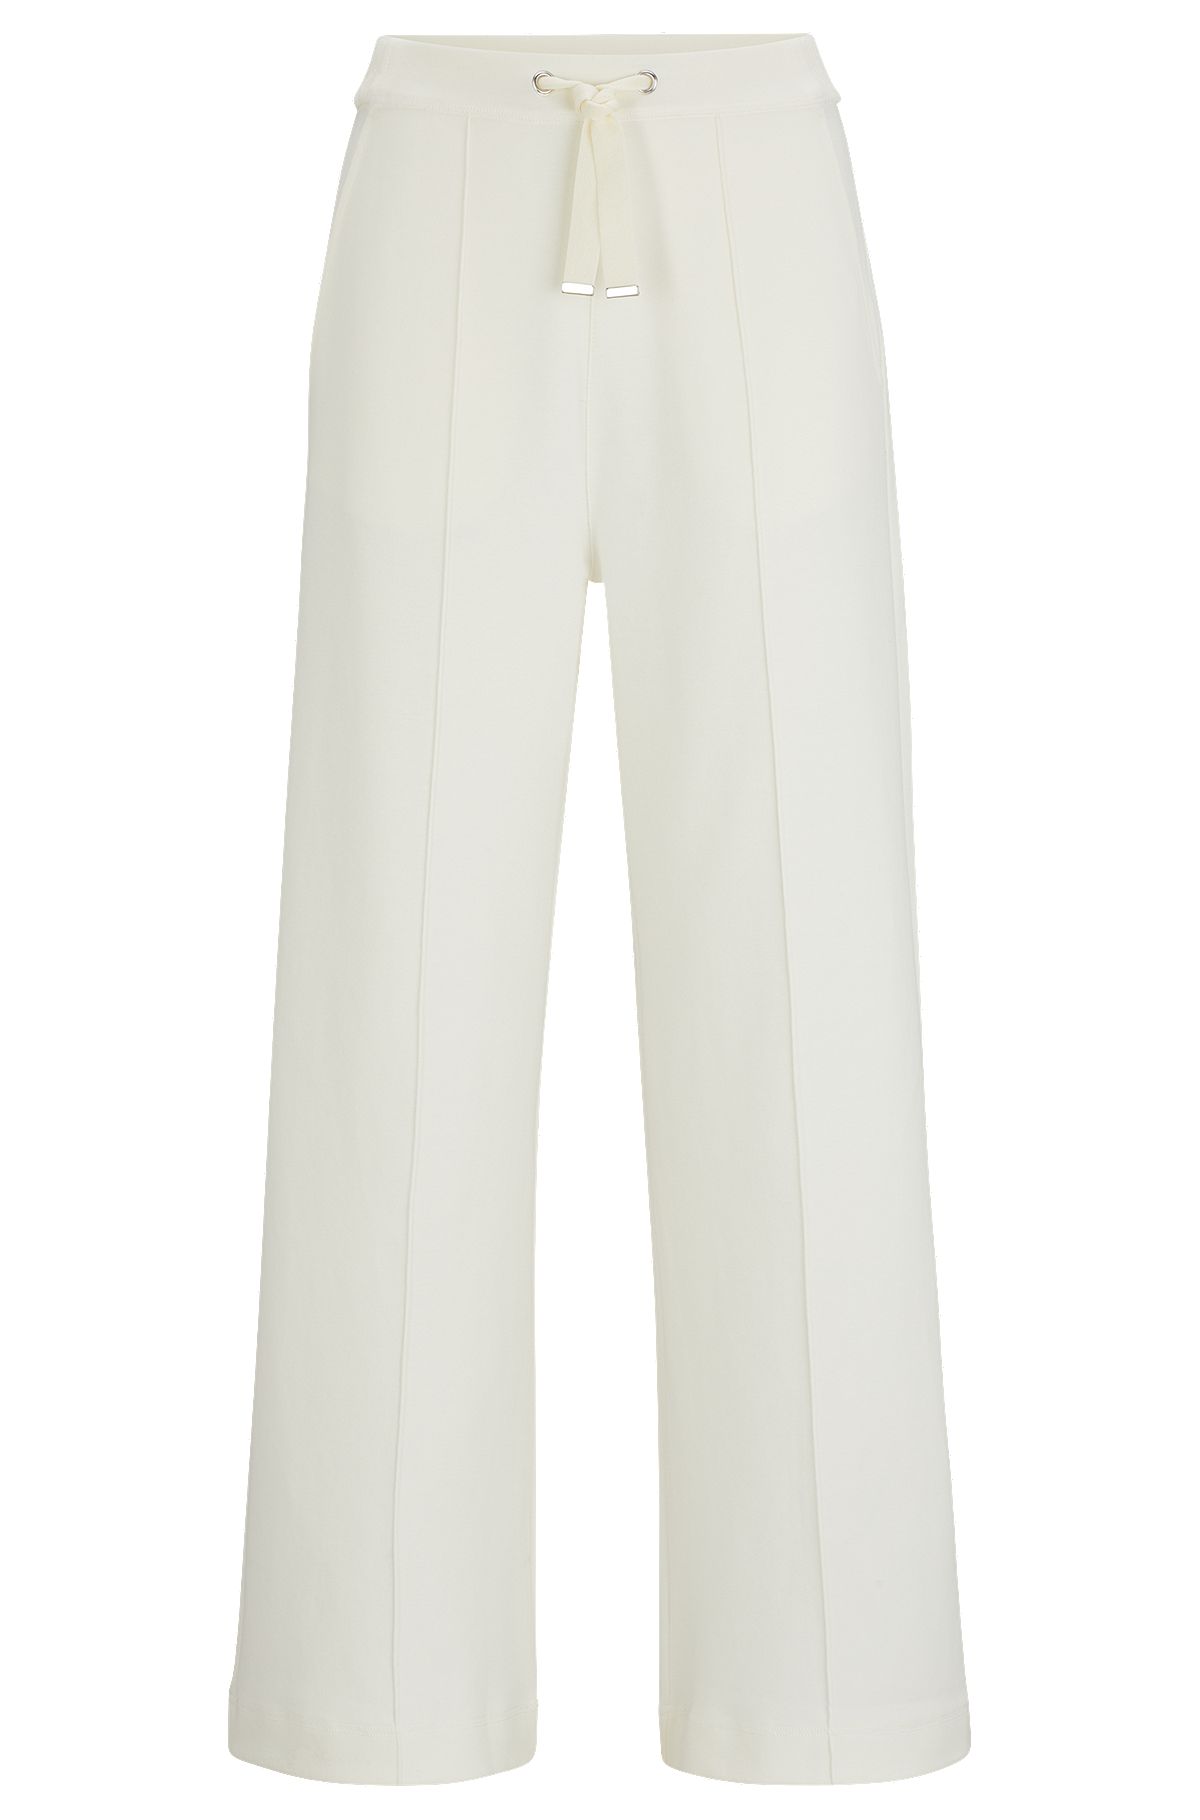 Pantalon en coton mélangé avec rubans et cordon de serrage, Blanc